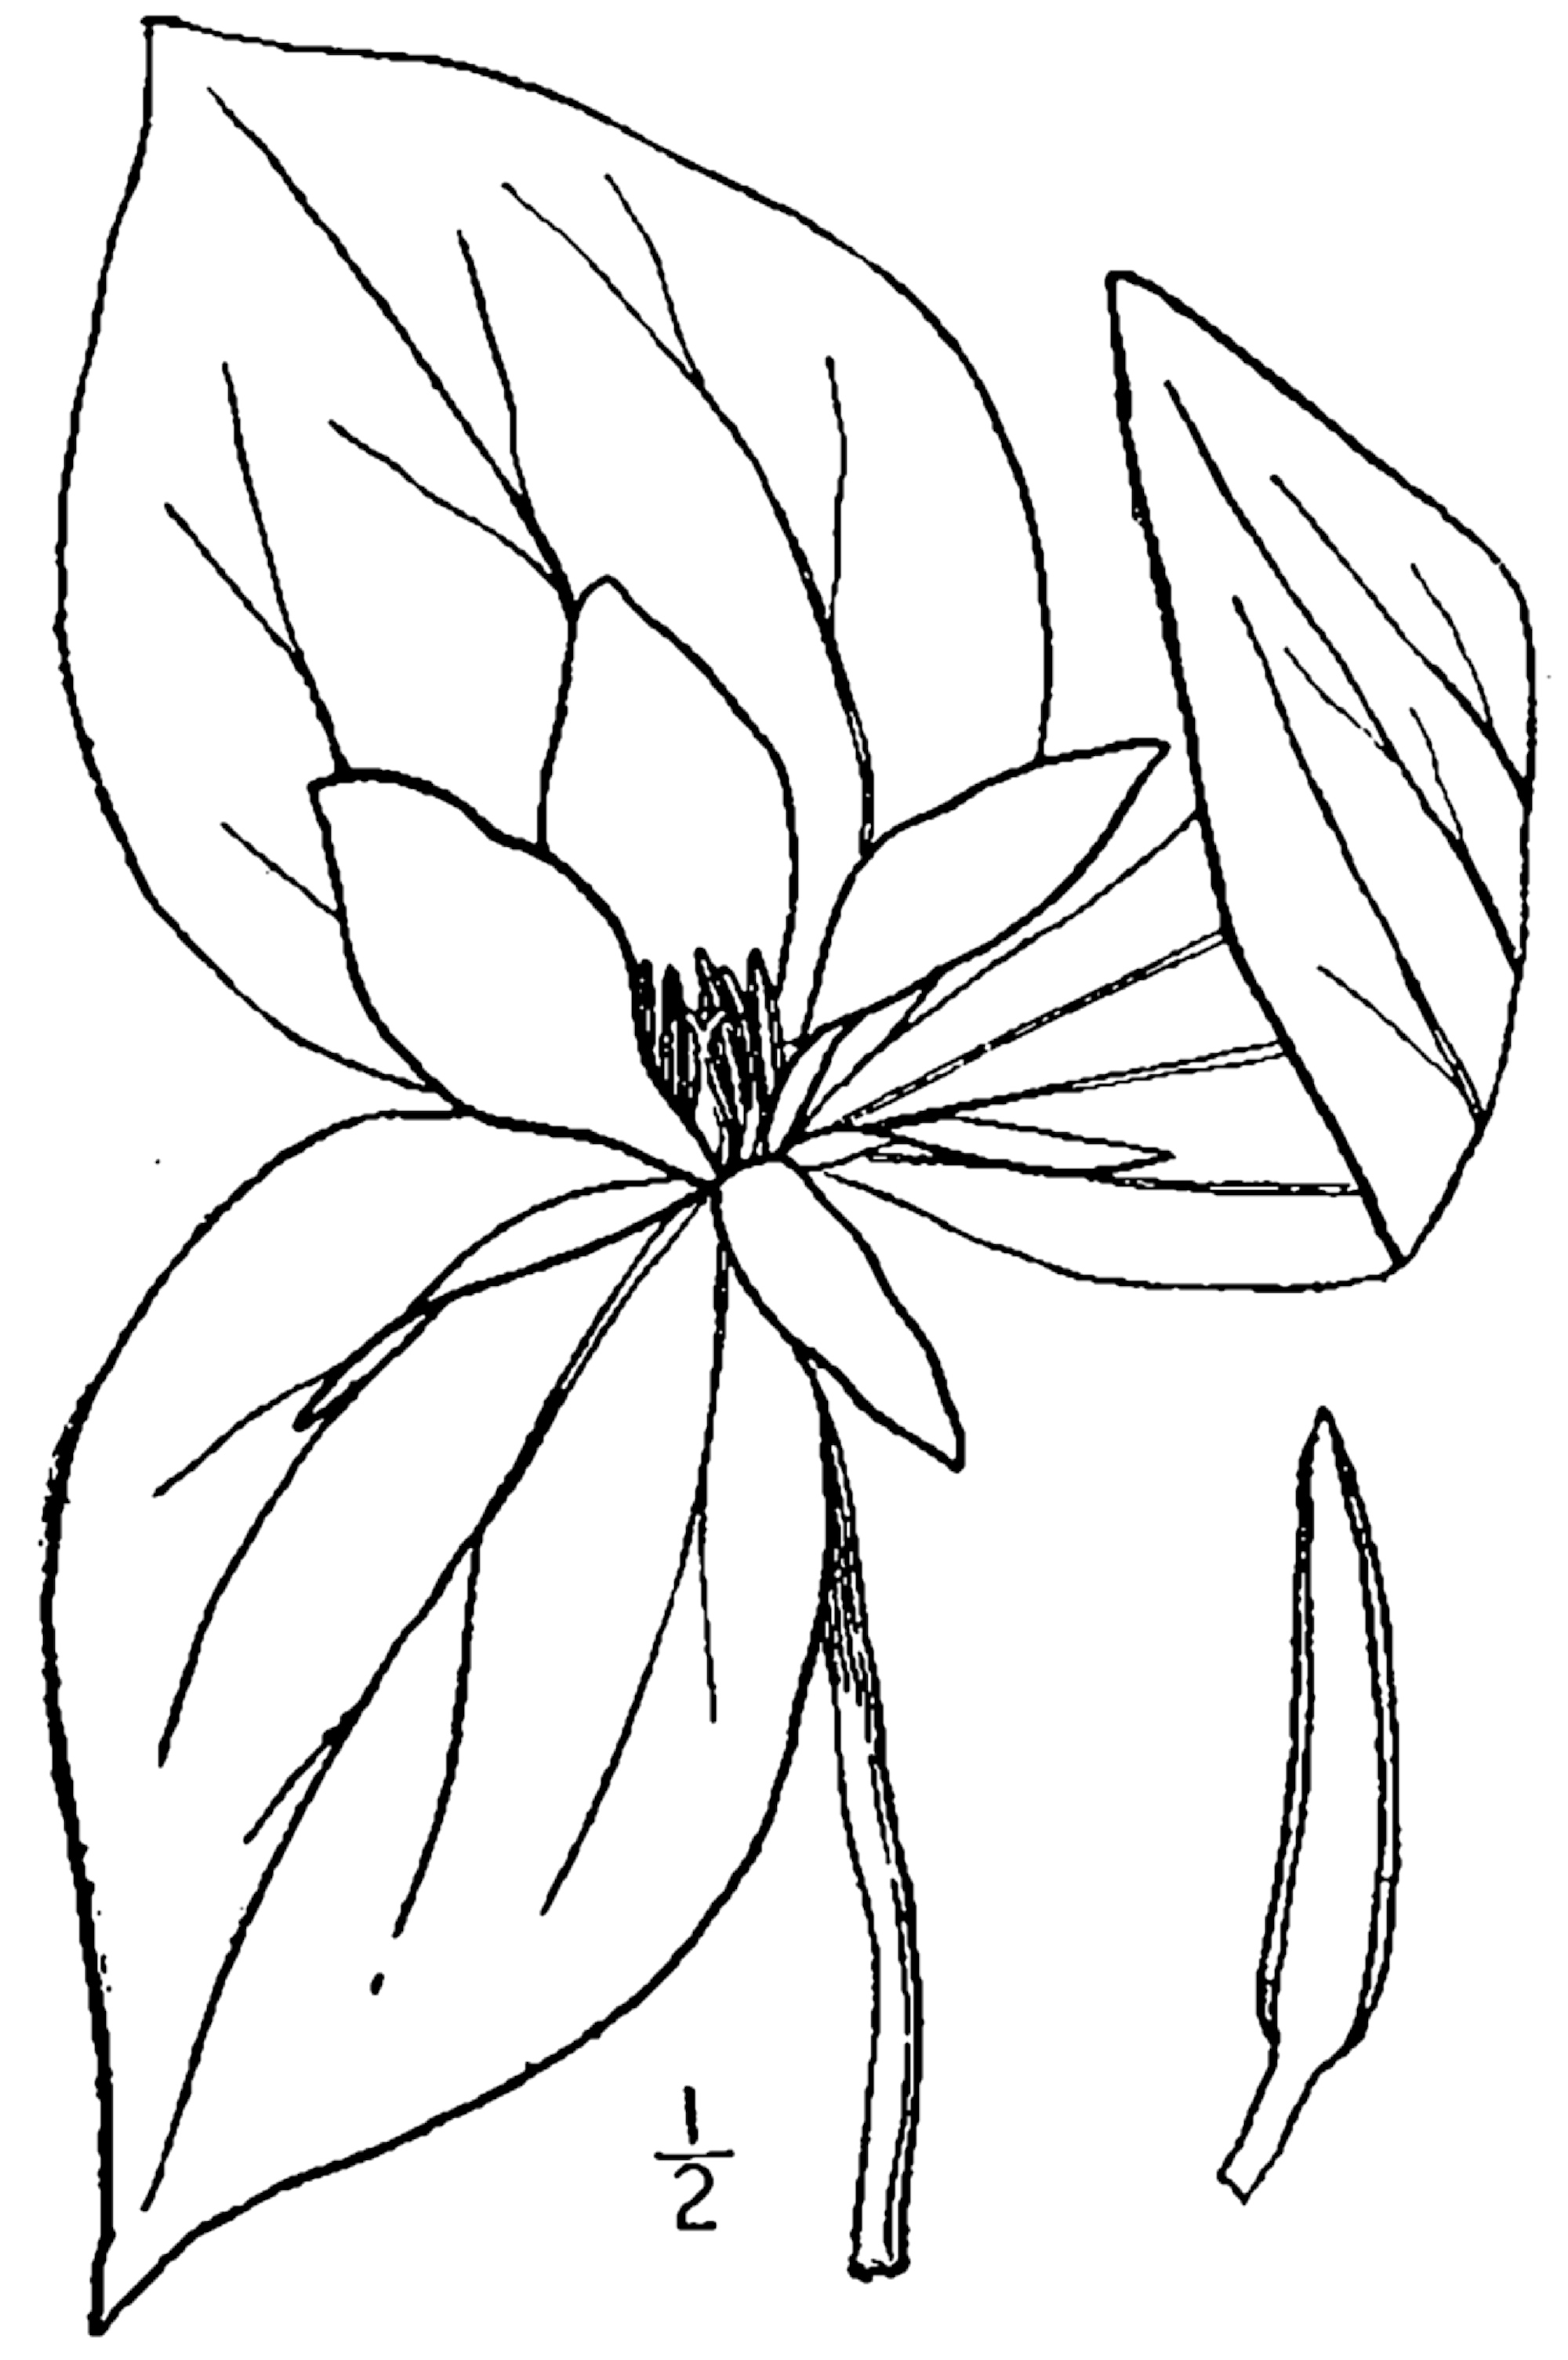 1913 illustration of Trillium Sessile.